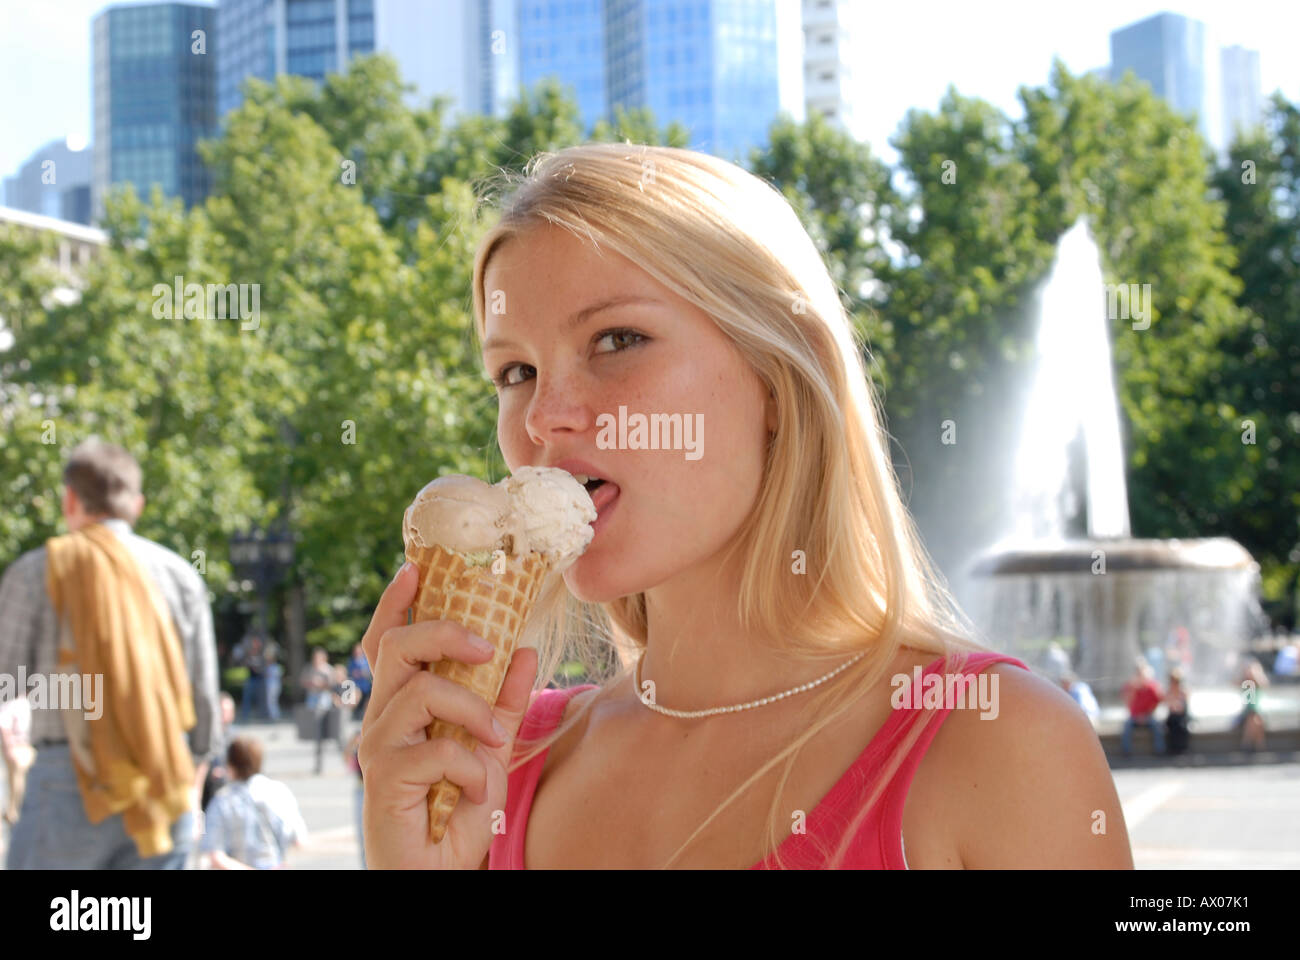 Blond City Eiscreme schlecken lecken geniessen Kalorien Frau Haare junge lange Sommer sommerlich Stadt Teenager Stock Photo